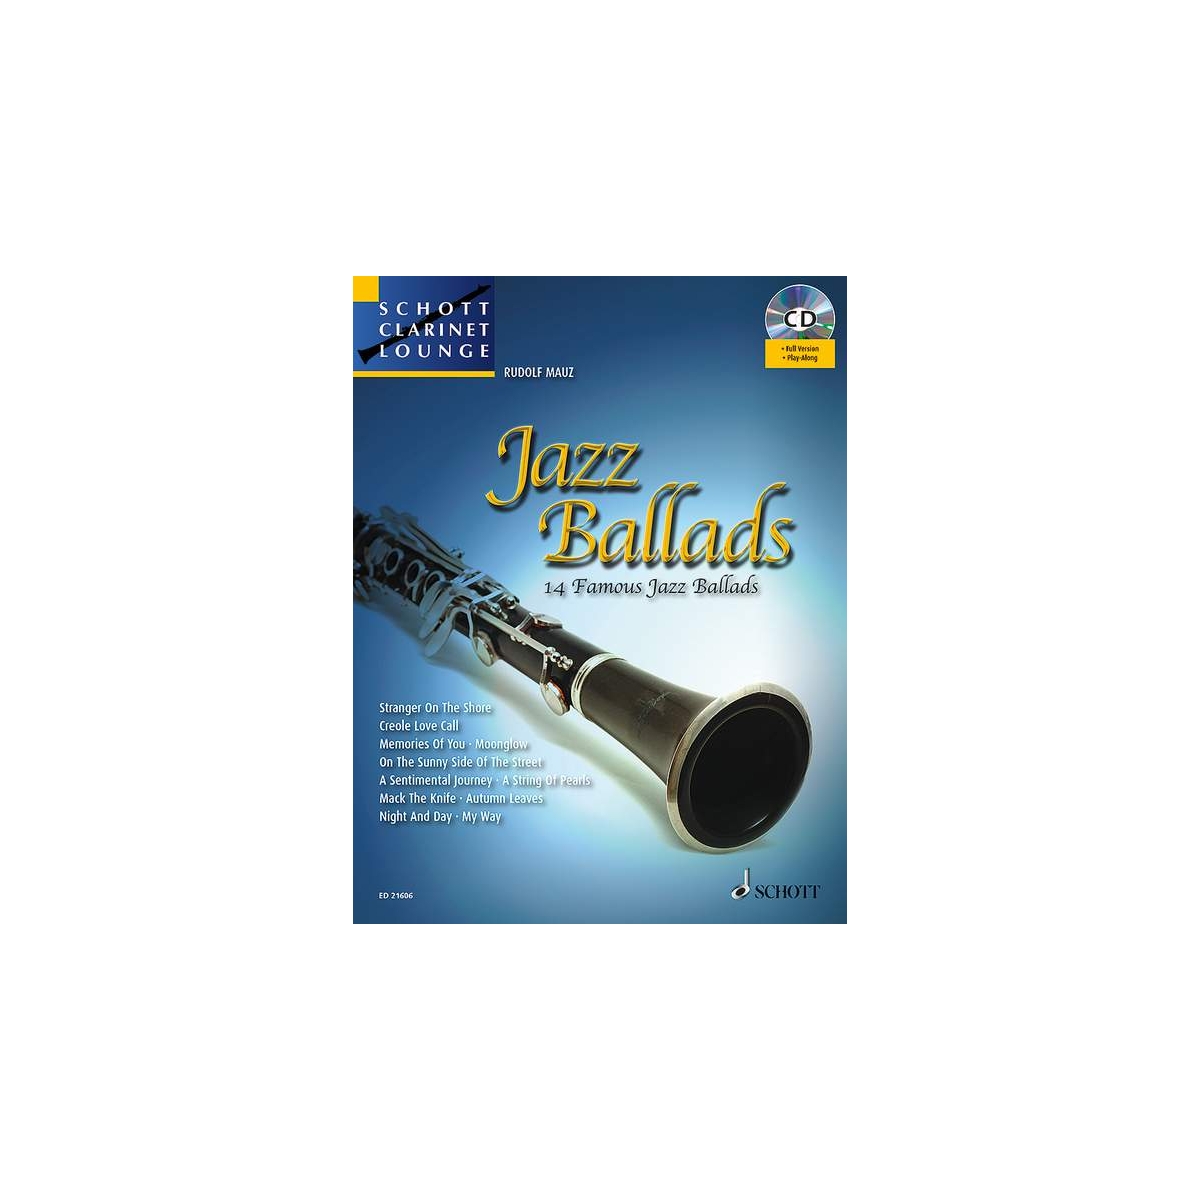 Schott Clarinet Lounge: Jazz Ballads